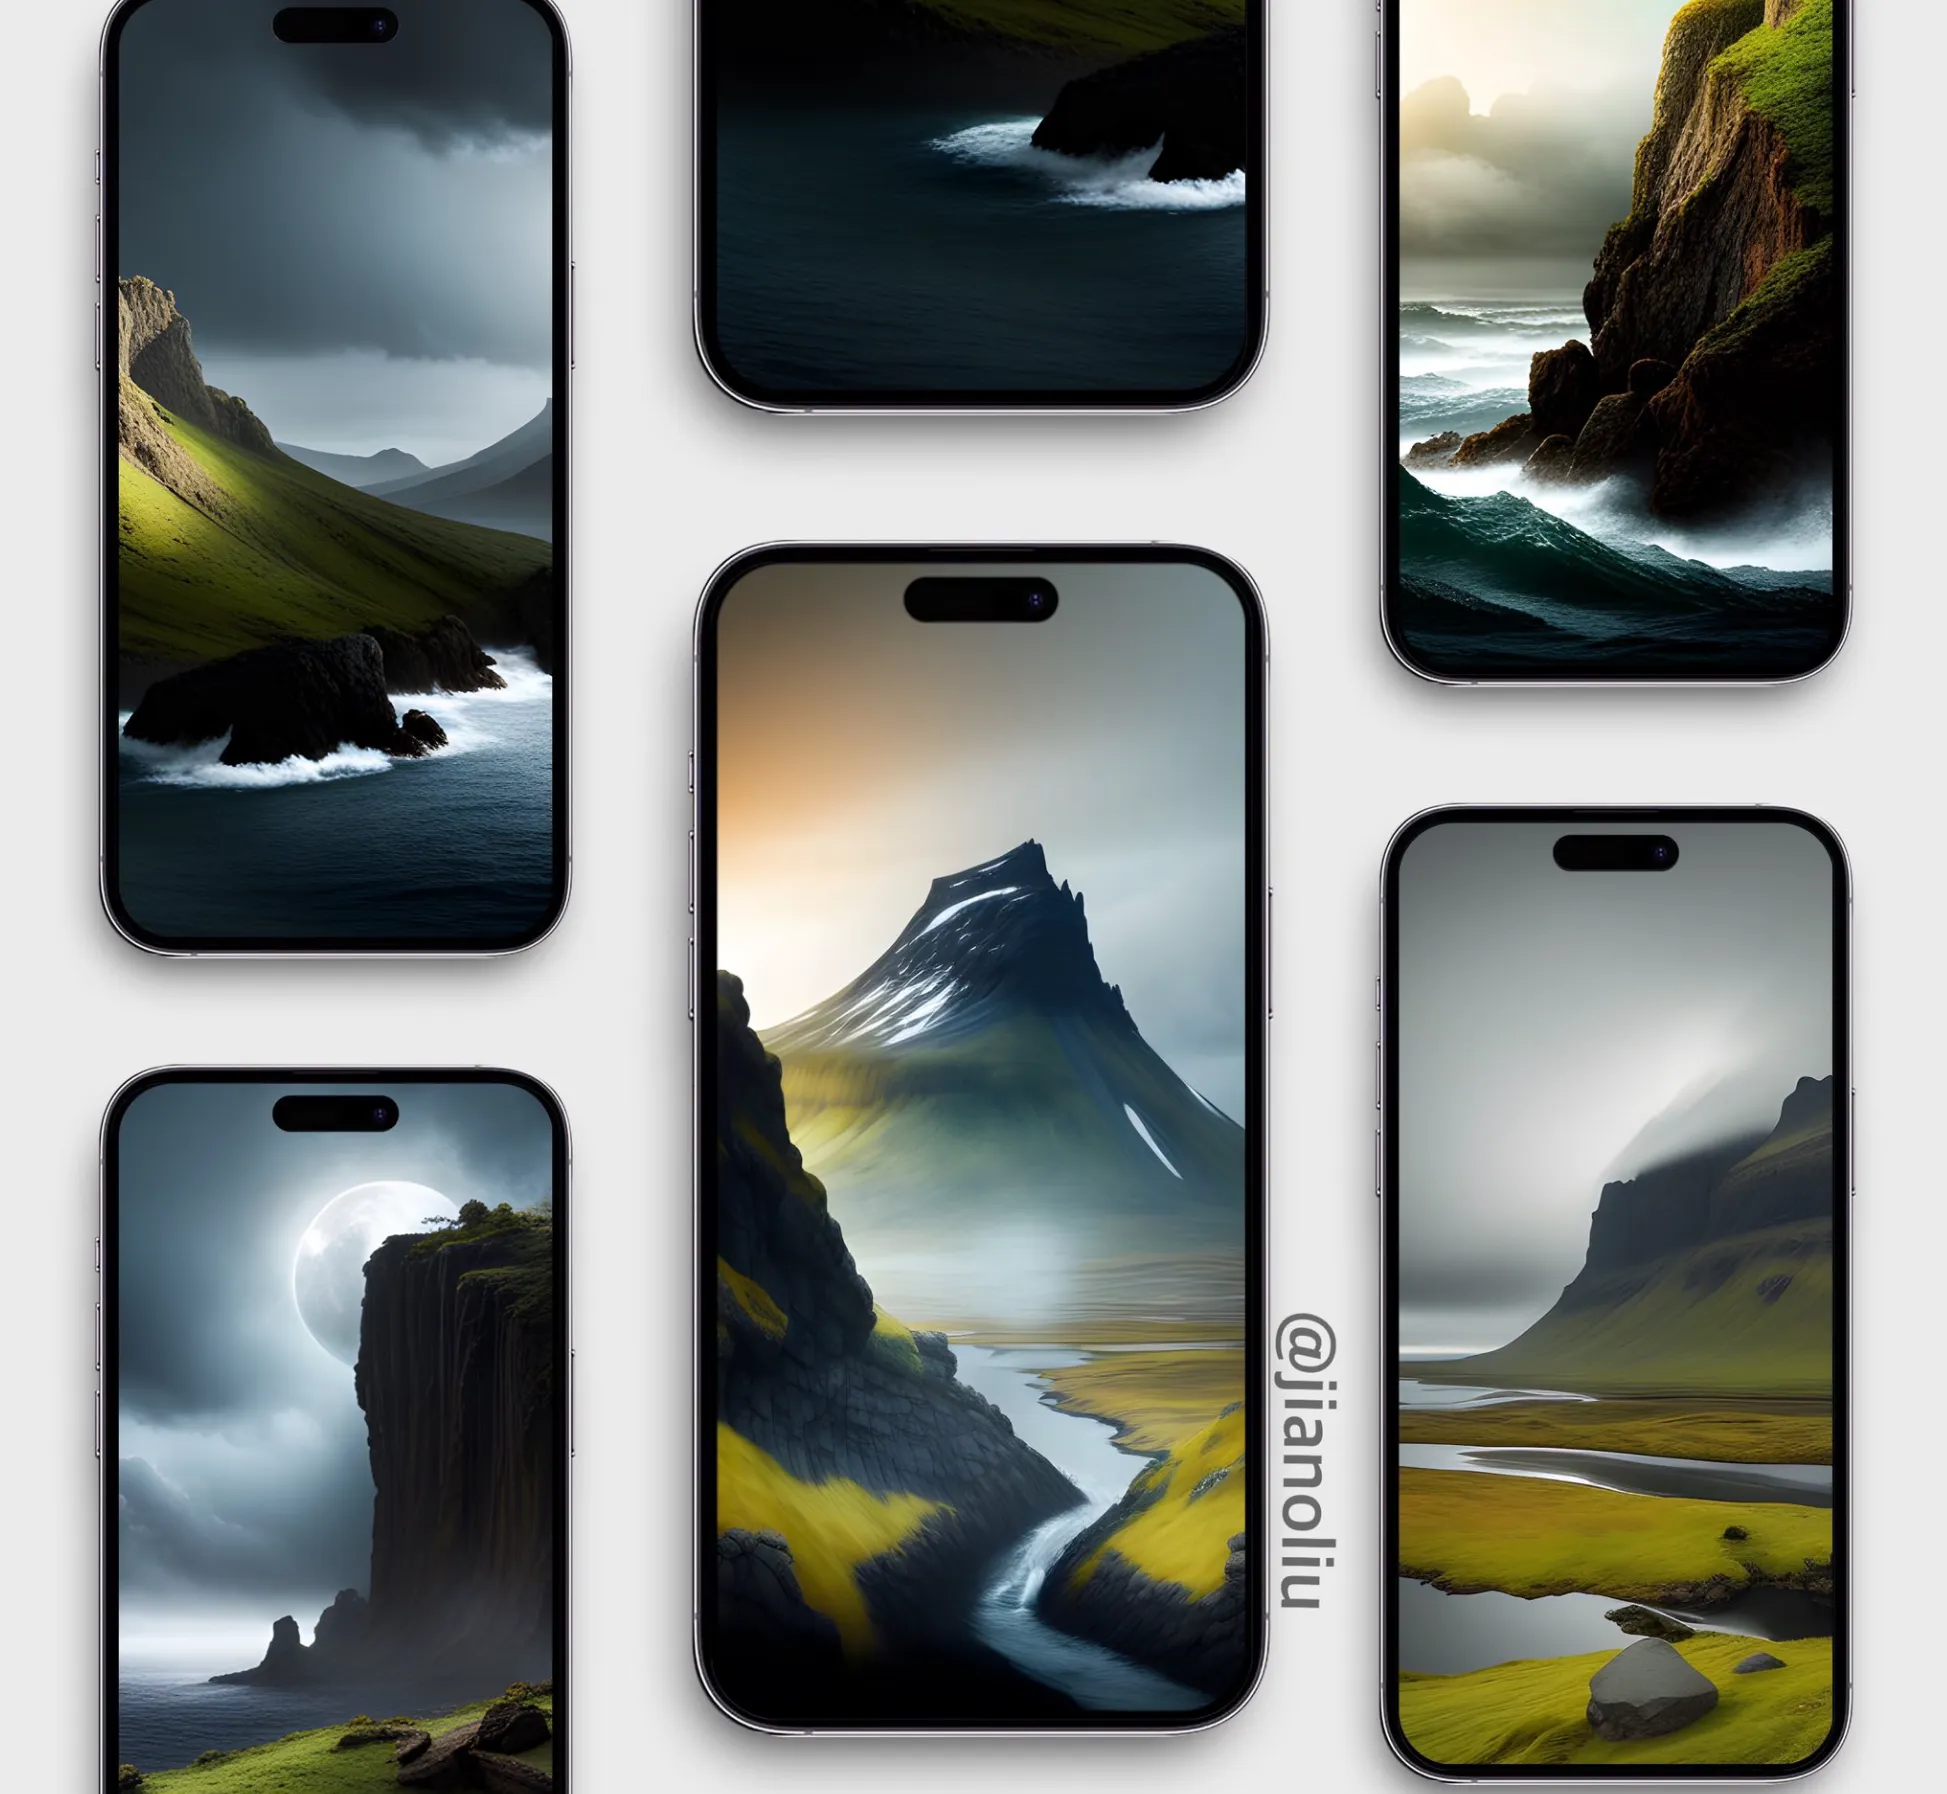 Hình nền iPhone đẹp và chất lượng cao chủ đề núi và biển cả